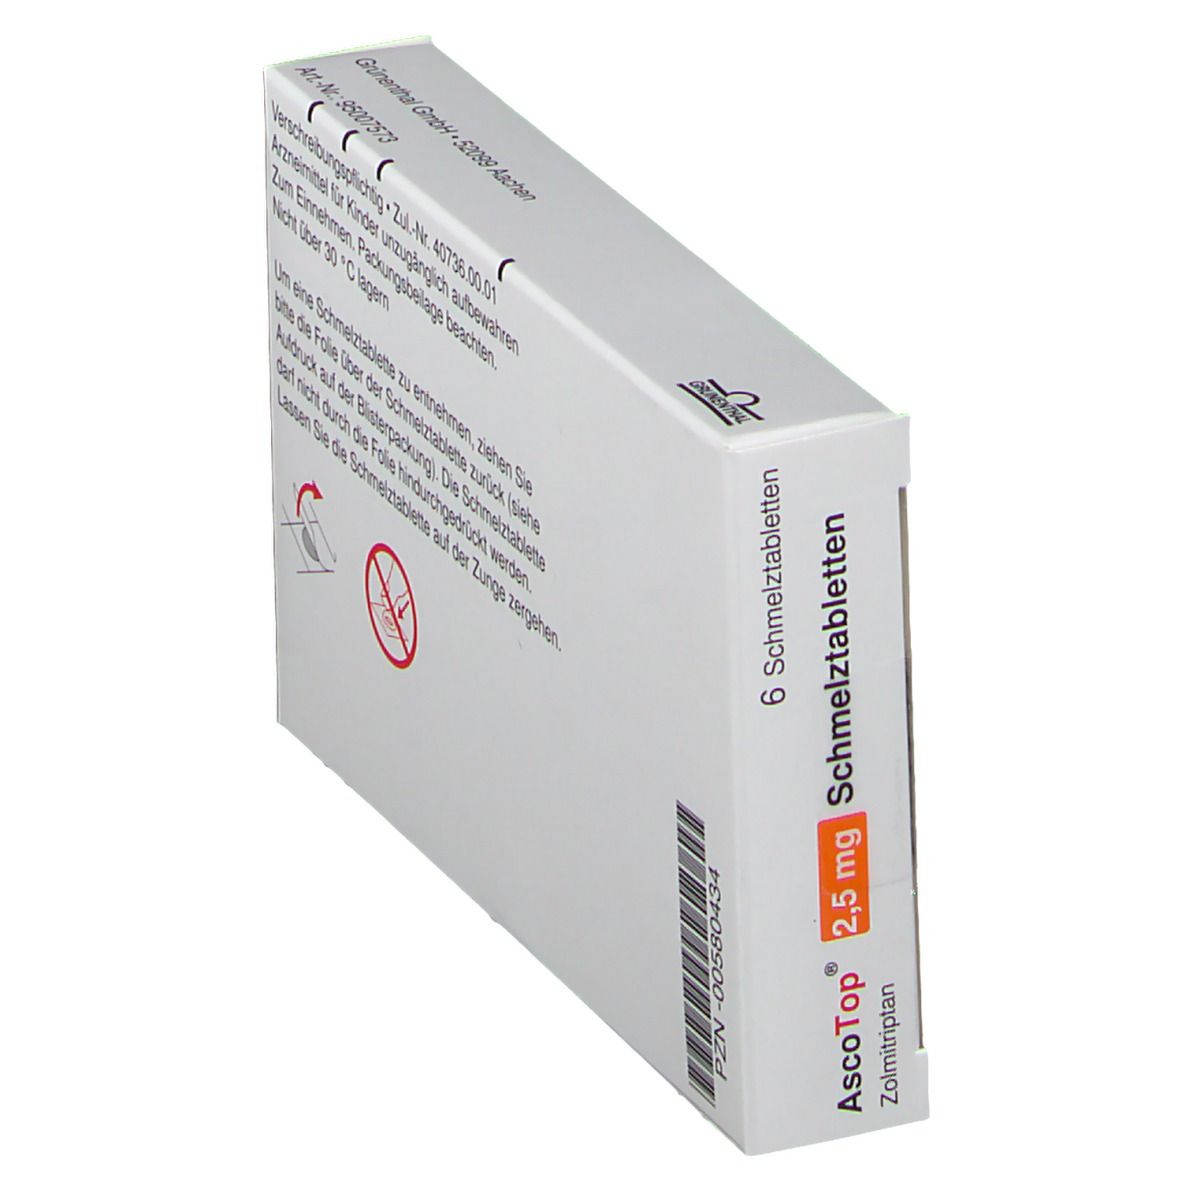 AscoTop® 2,5 mg Schmelztabletten